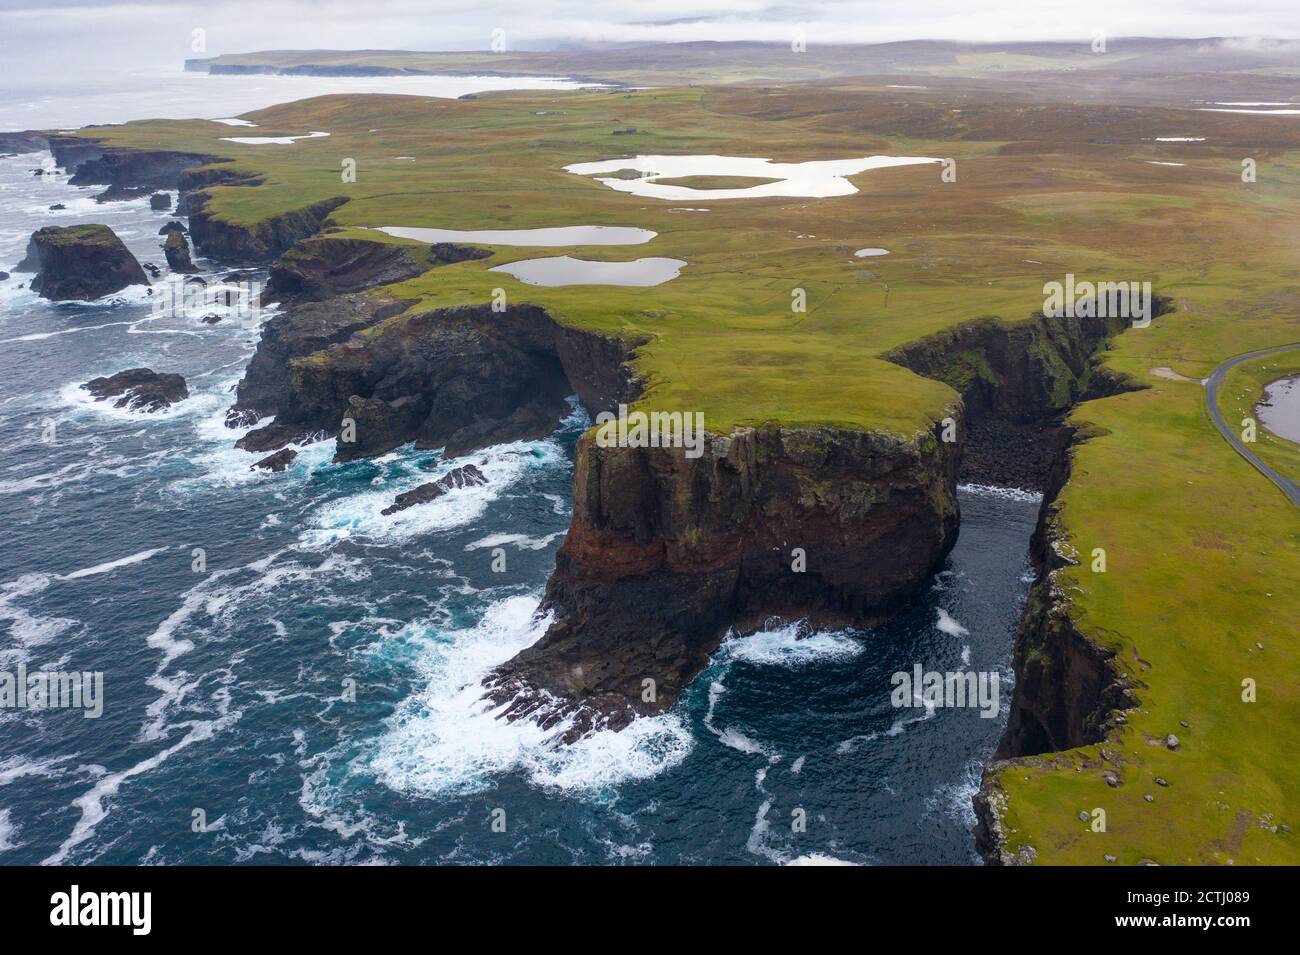 Falaises spectaculaires avec Calder's Geo à droite, sur la côte à Eshaness à Northmavine , partie continentale nord des îles Shetland, Écosse, Royaume-Uni Banque D'Images